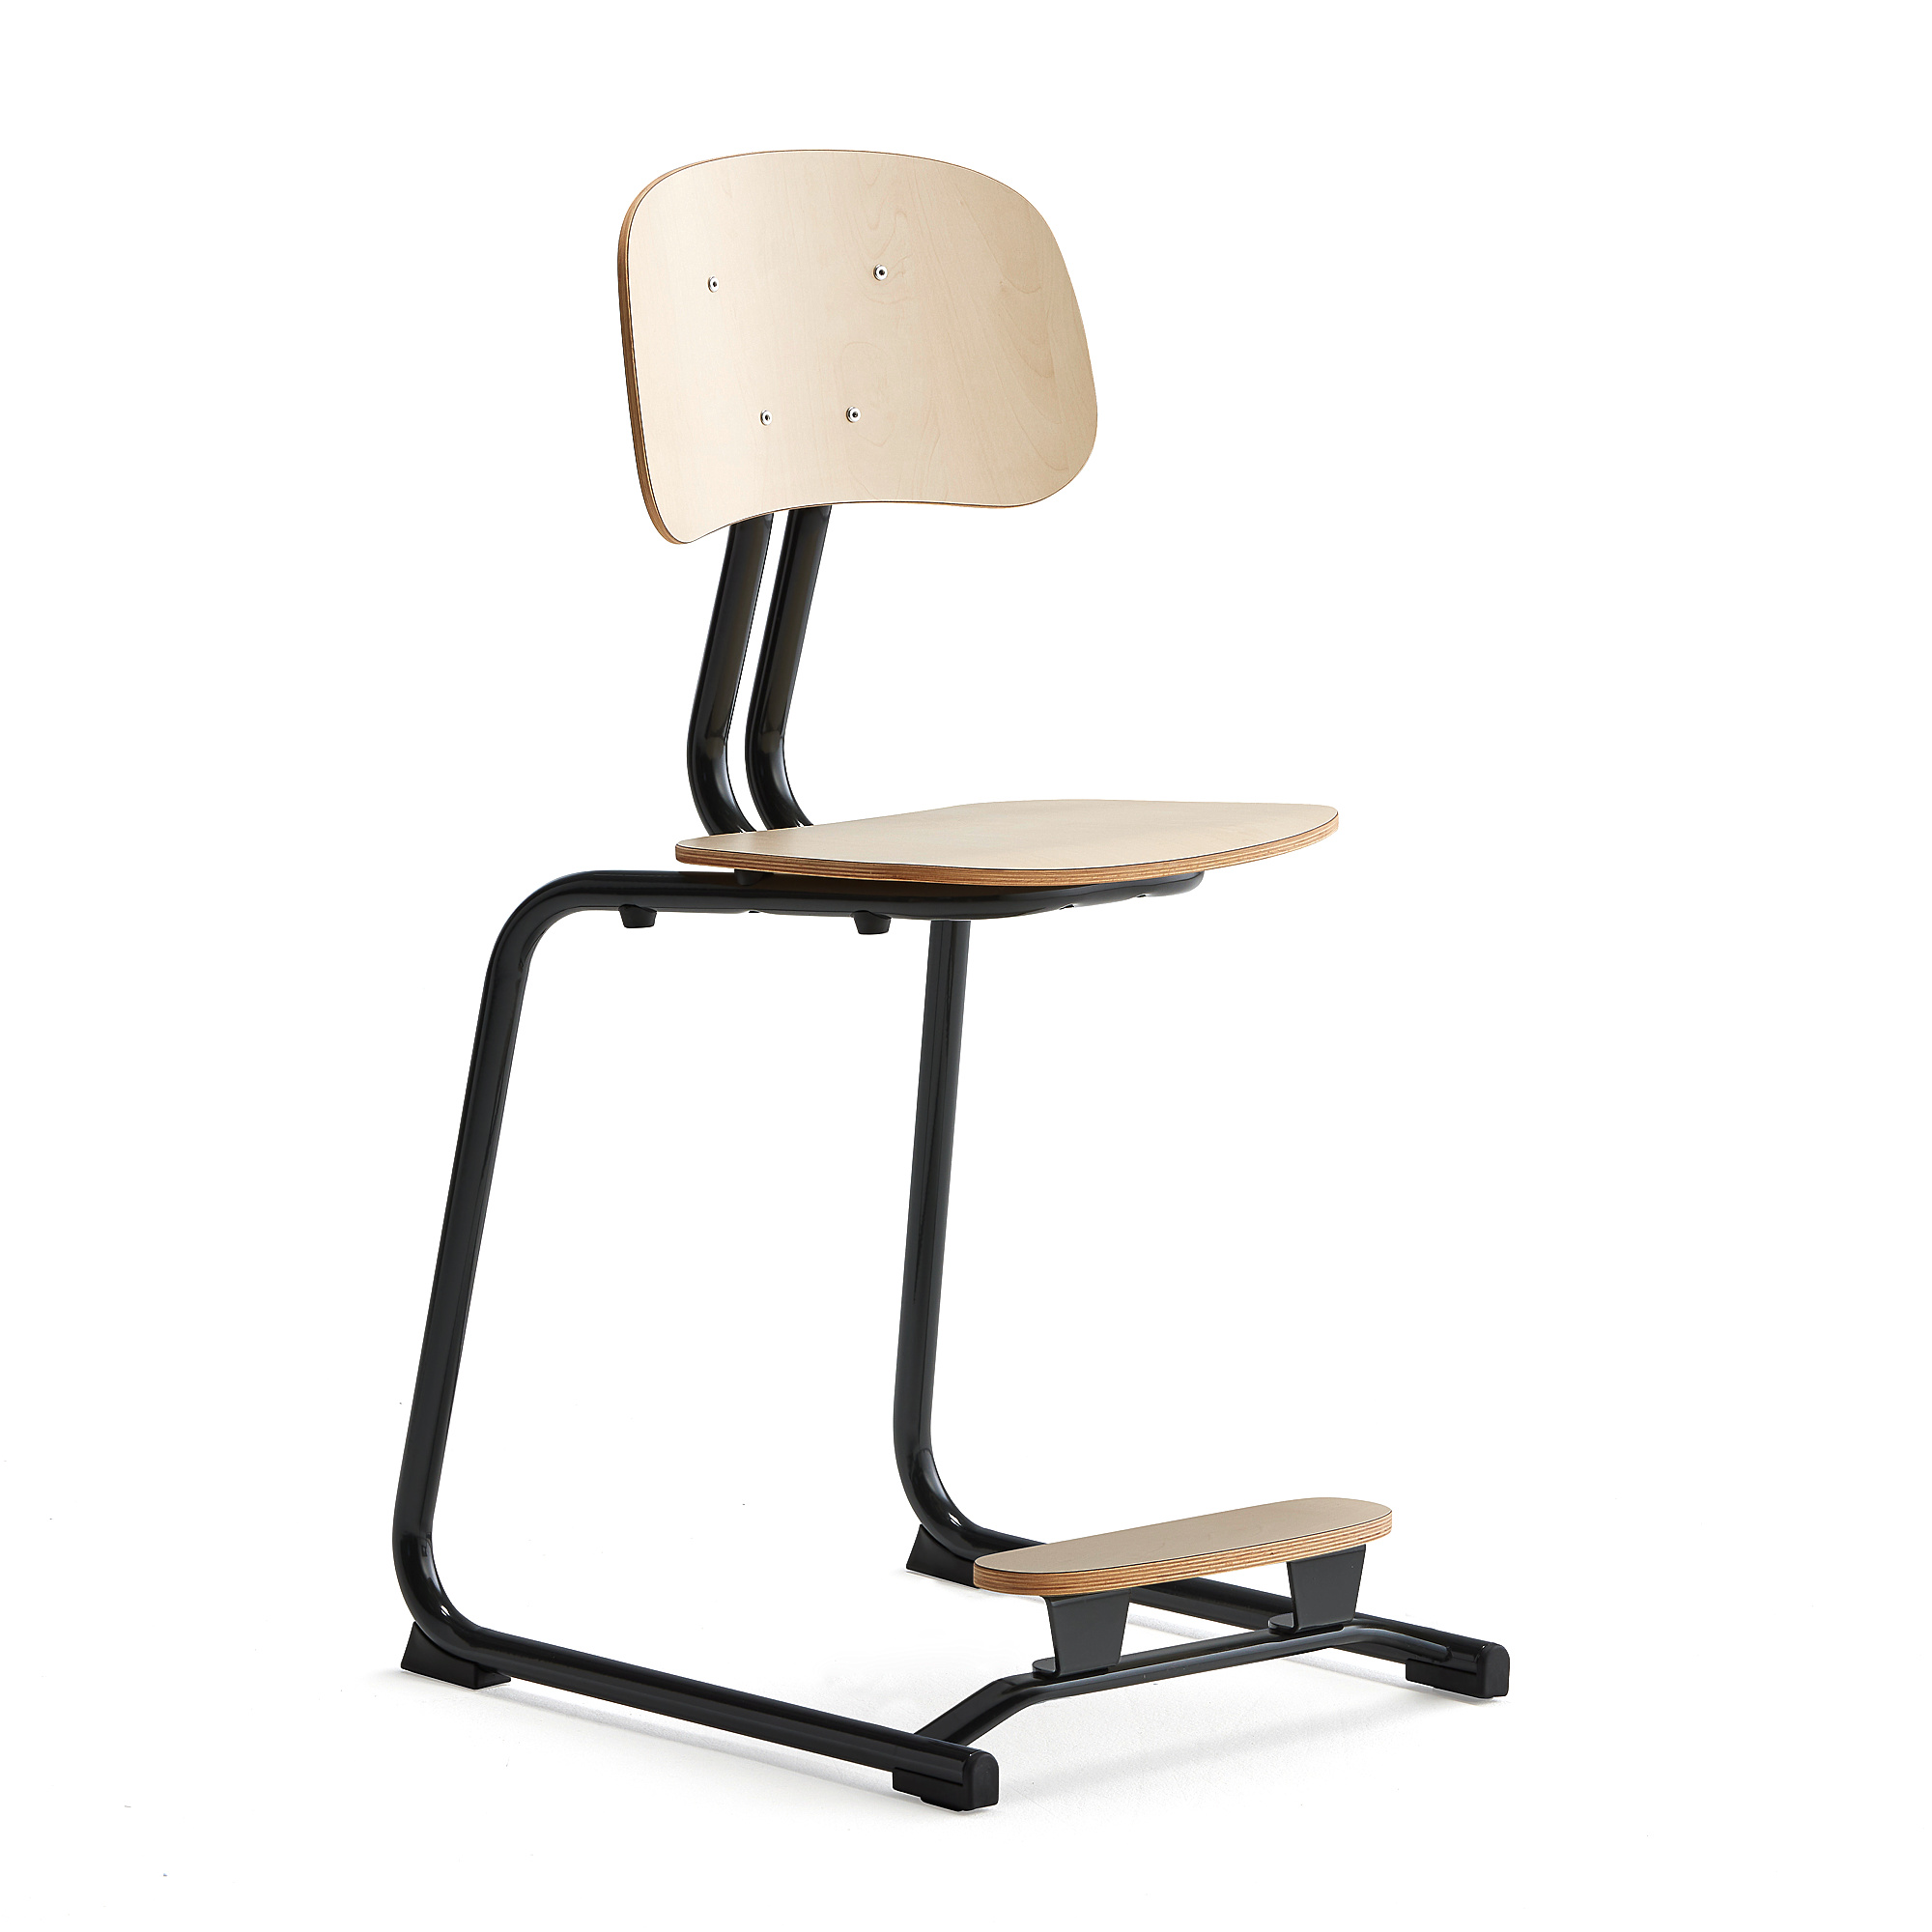 Školní židle YNGVE, ližinová podnož, výška 500 mm, antracitově šedá/bříza